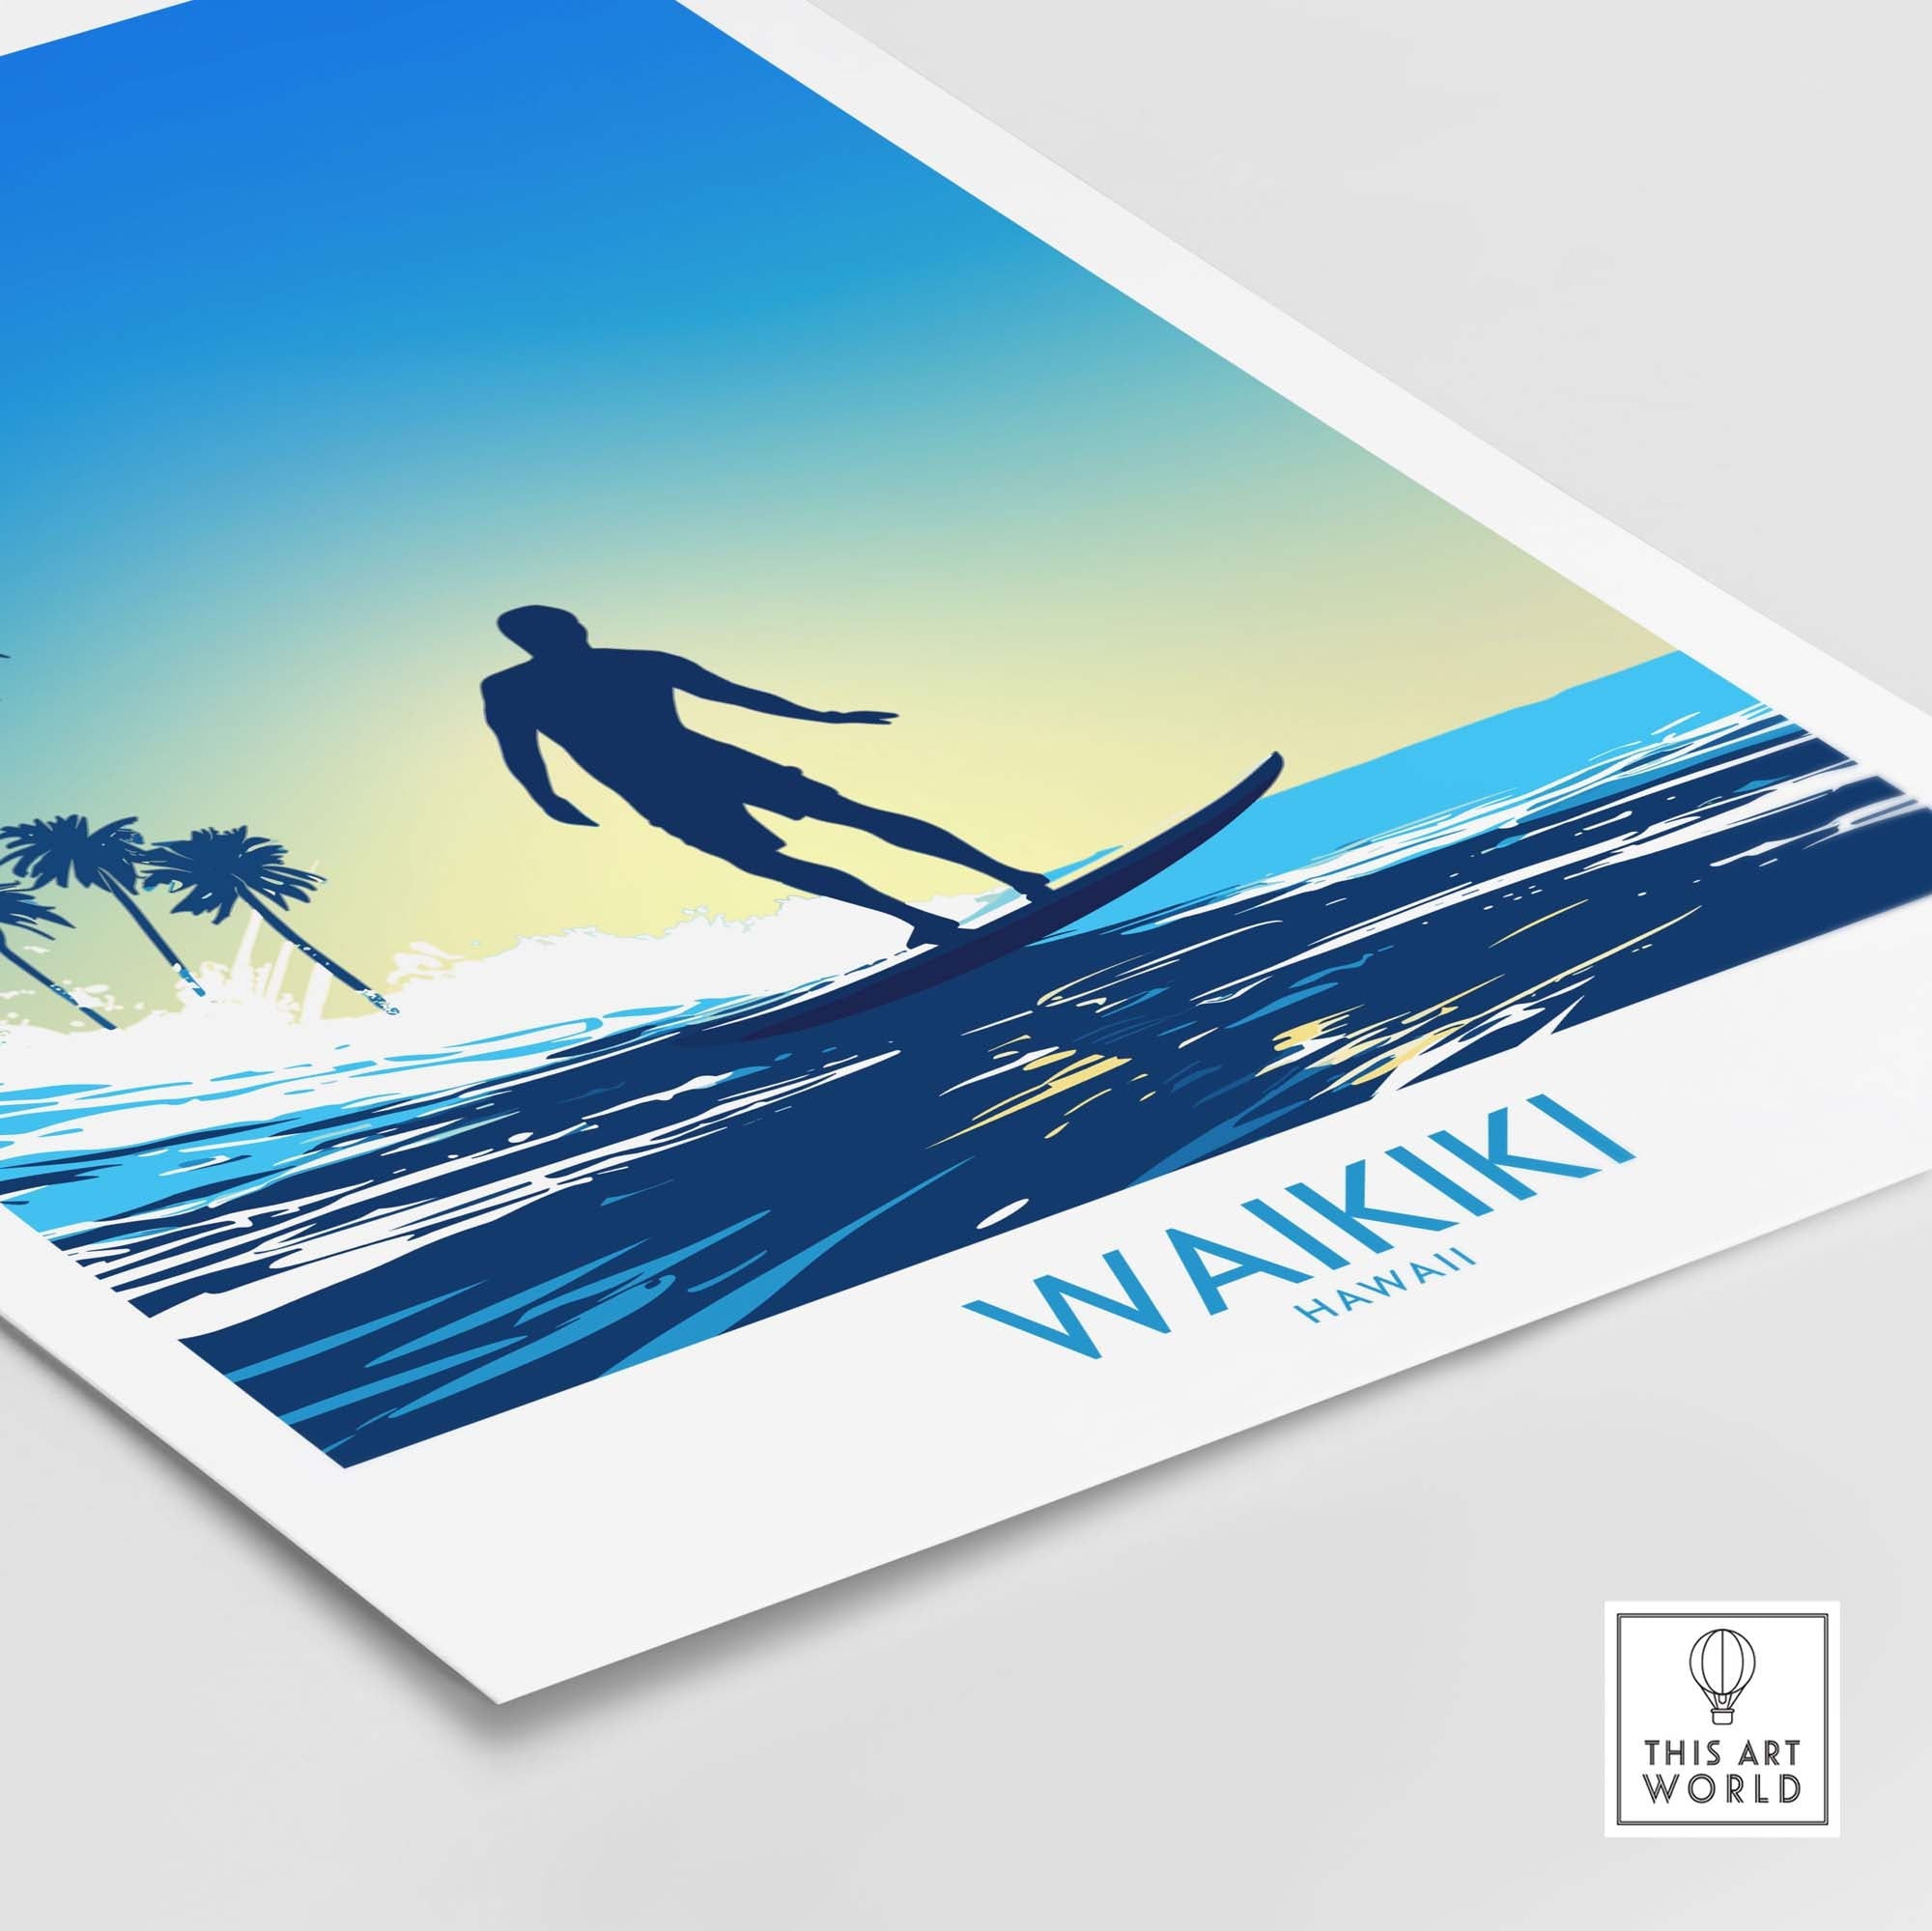 Waikiki Beach Print